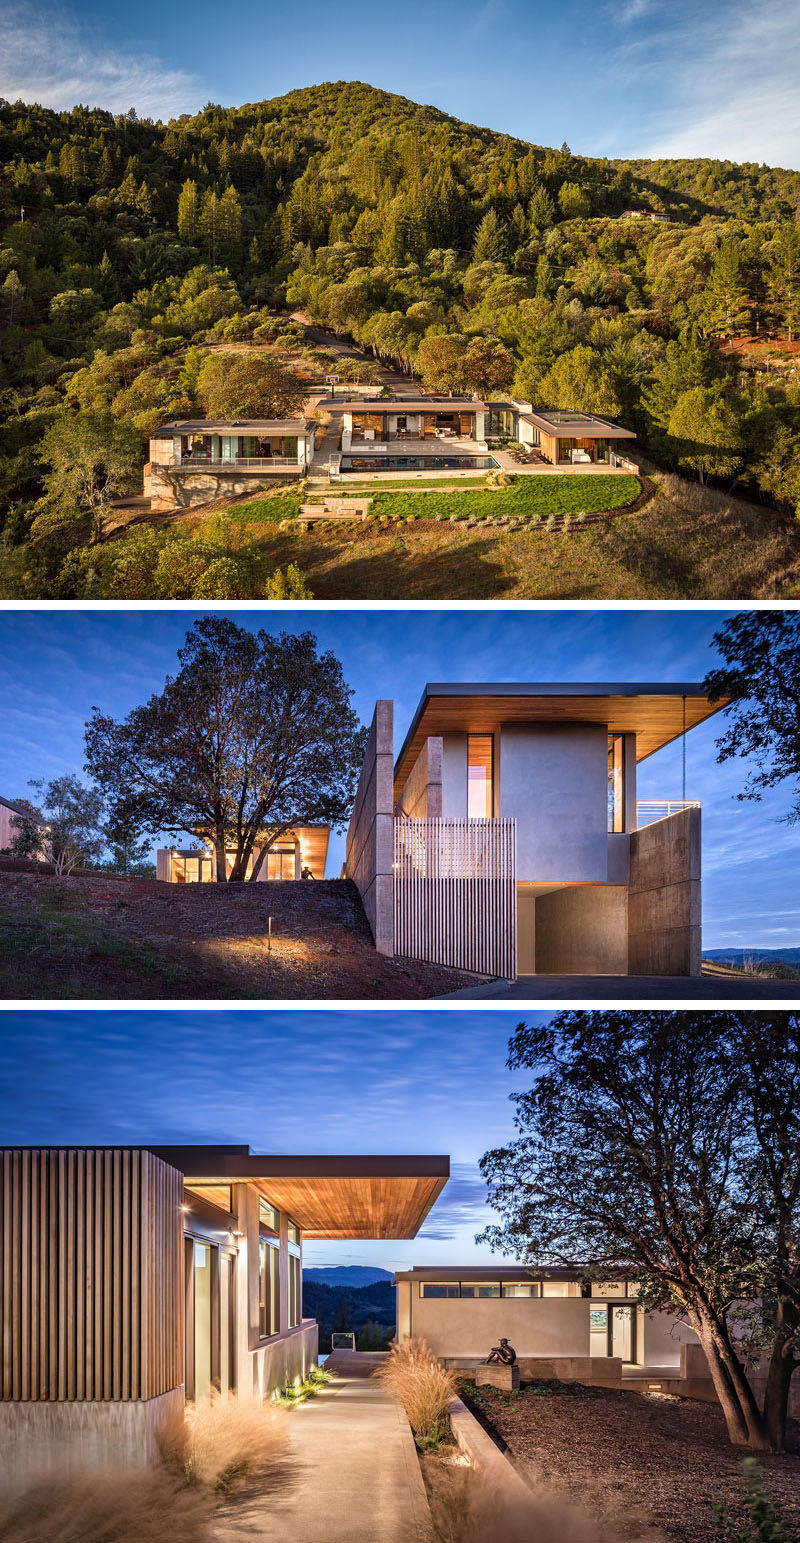  John Maniscalco Architecture спроектировала современный дом в Хилдсбурге, Калифорния, из каждой комнаты которого открывается вид на долину Драй-Крик. #ModernHouse #HouseDesign # Архитектура 